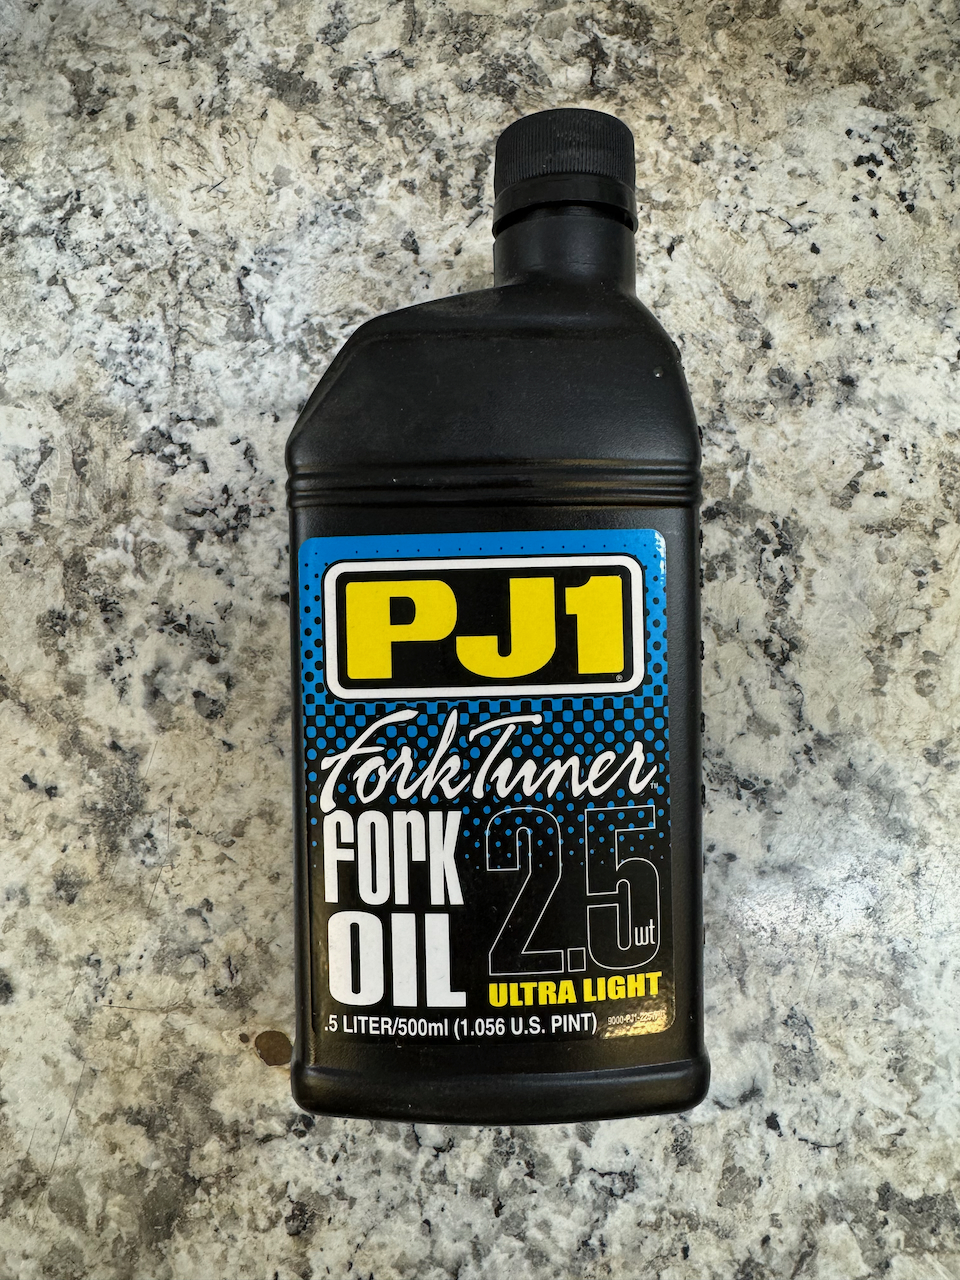 PJ1 Shock Fork Oil 2.5wt.